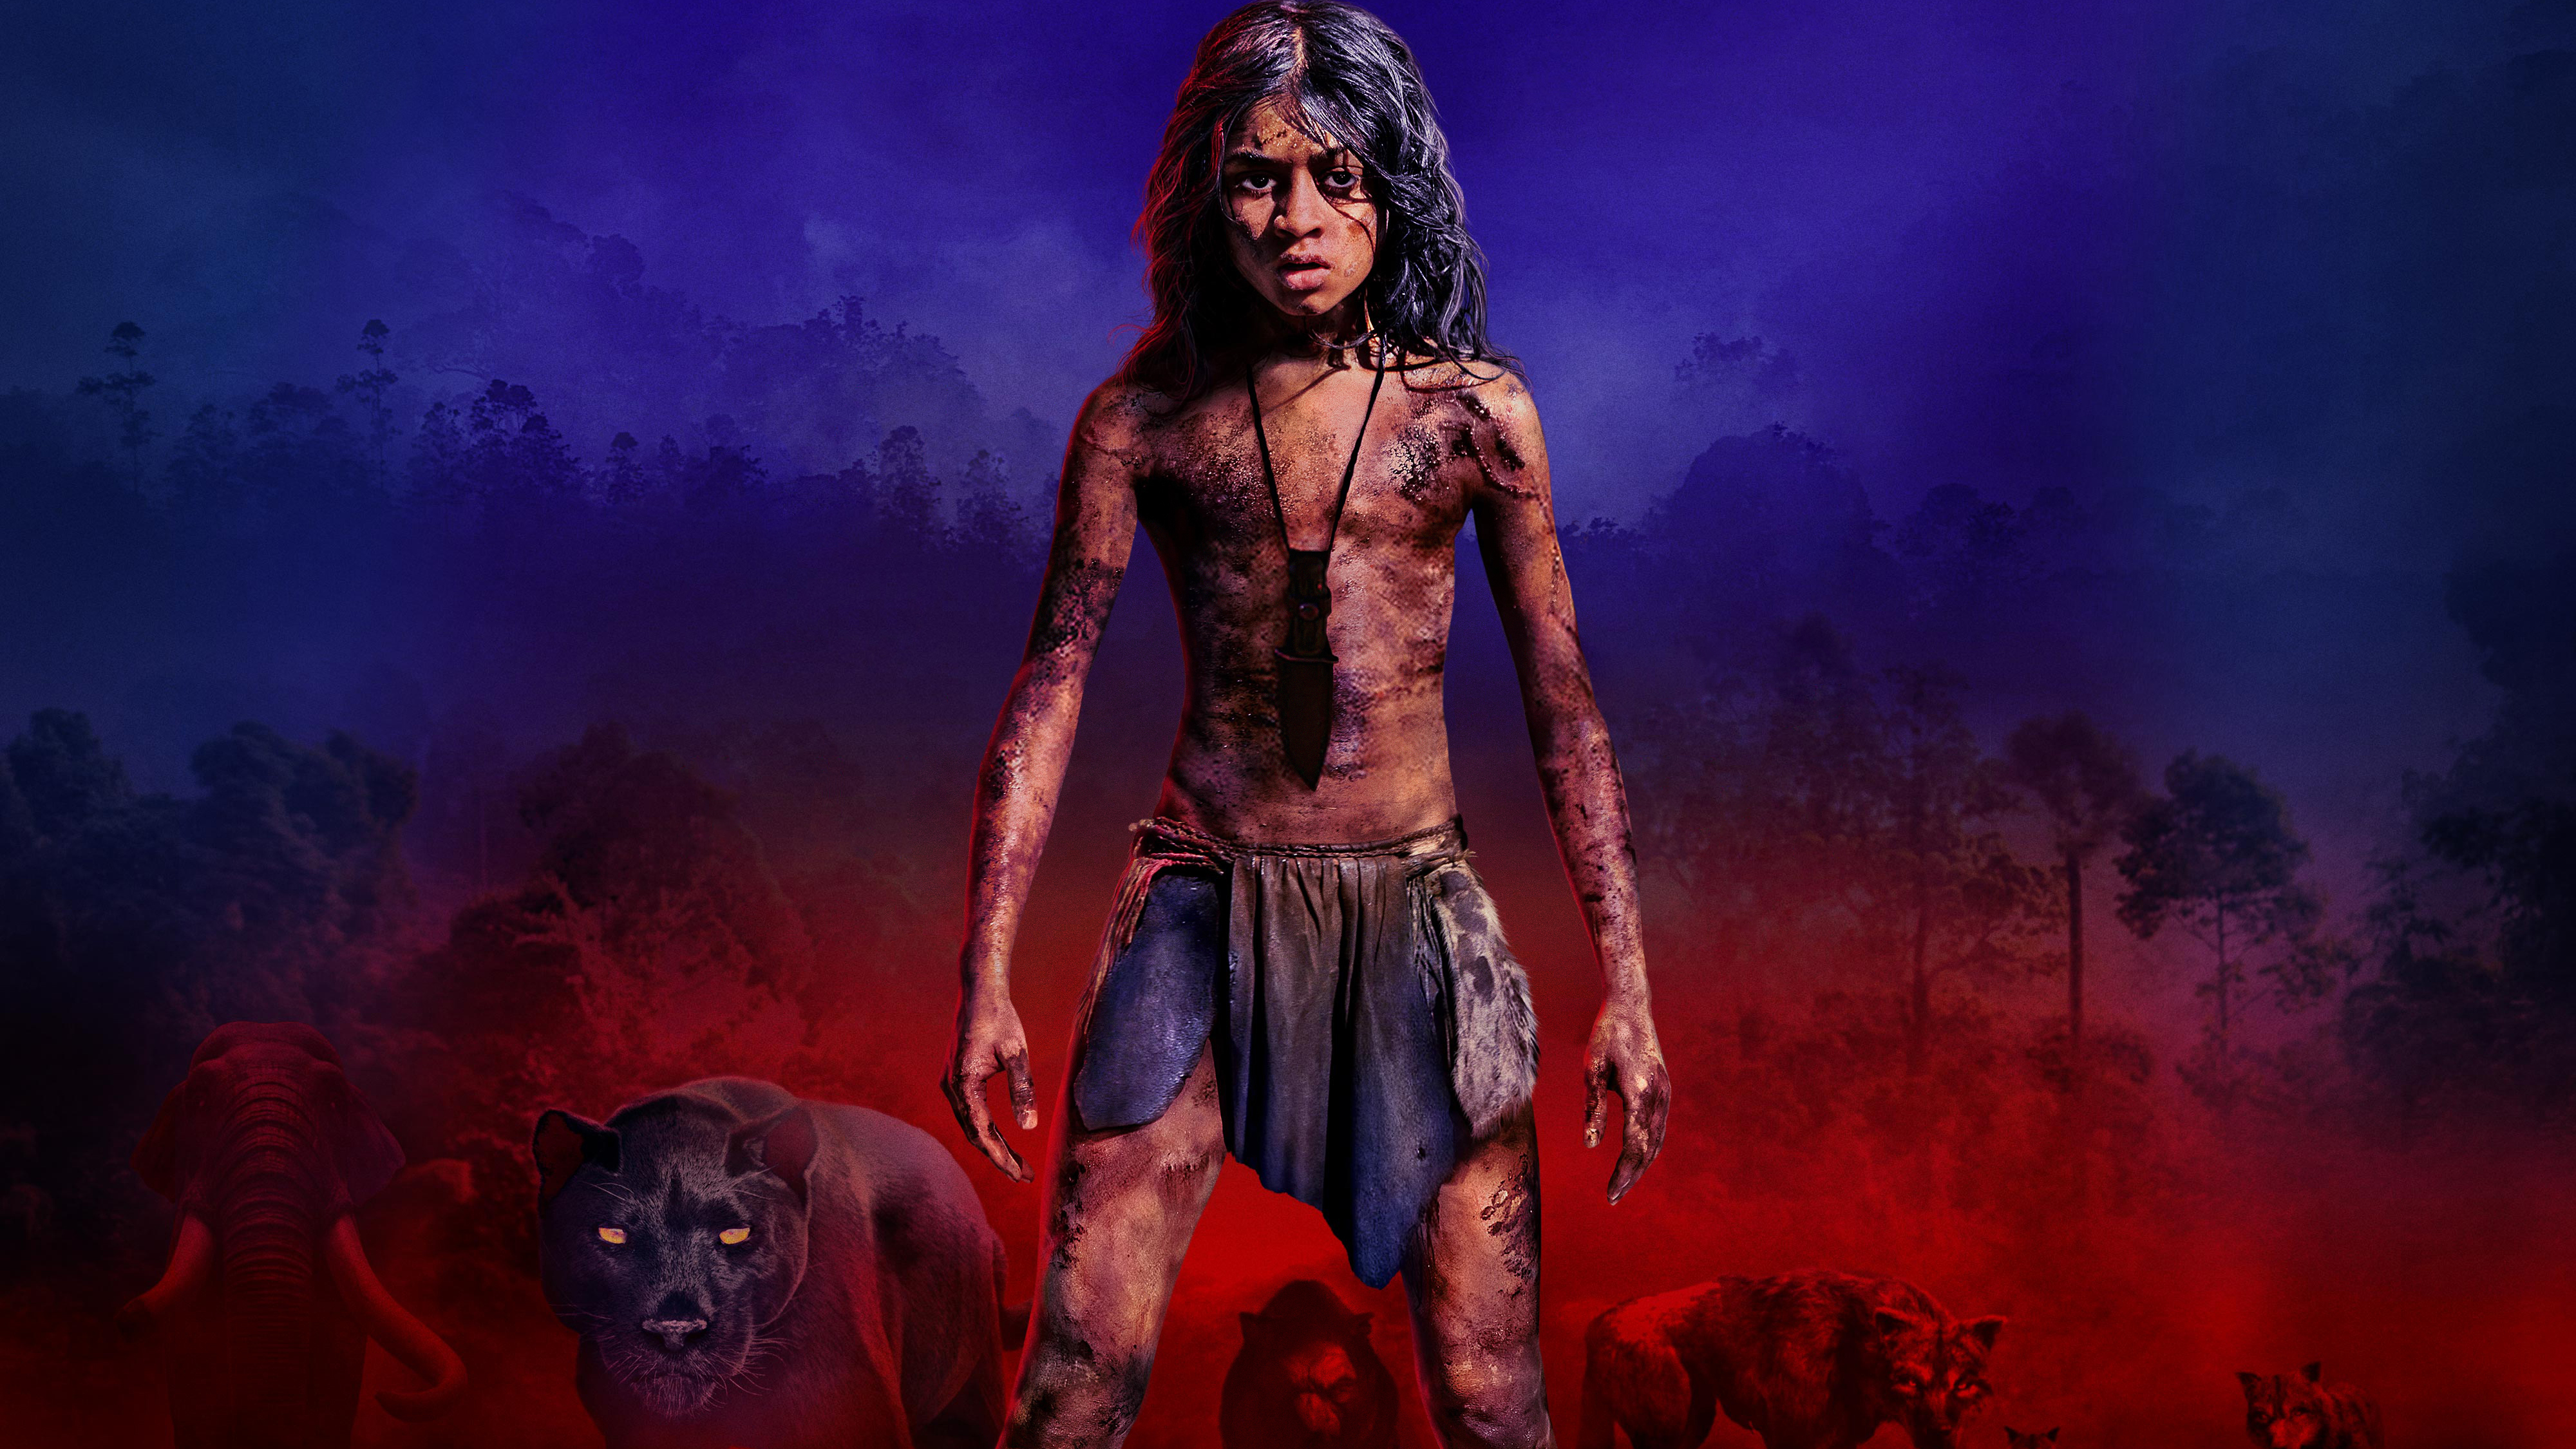 Mowgli Legend of the Jungle 2018 4K